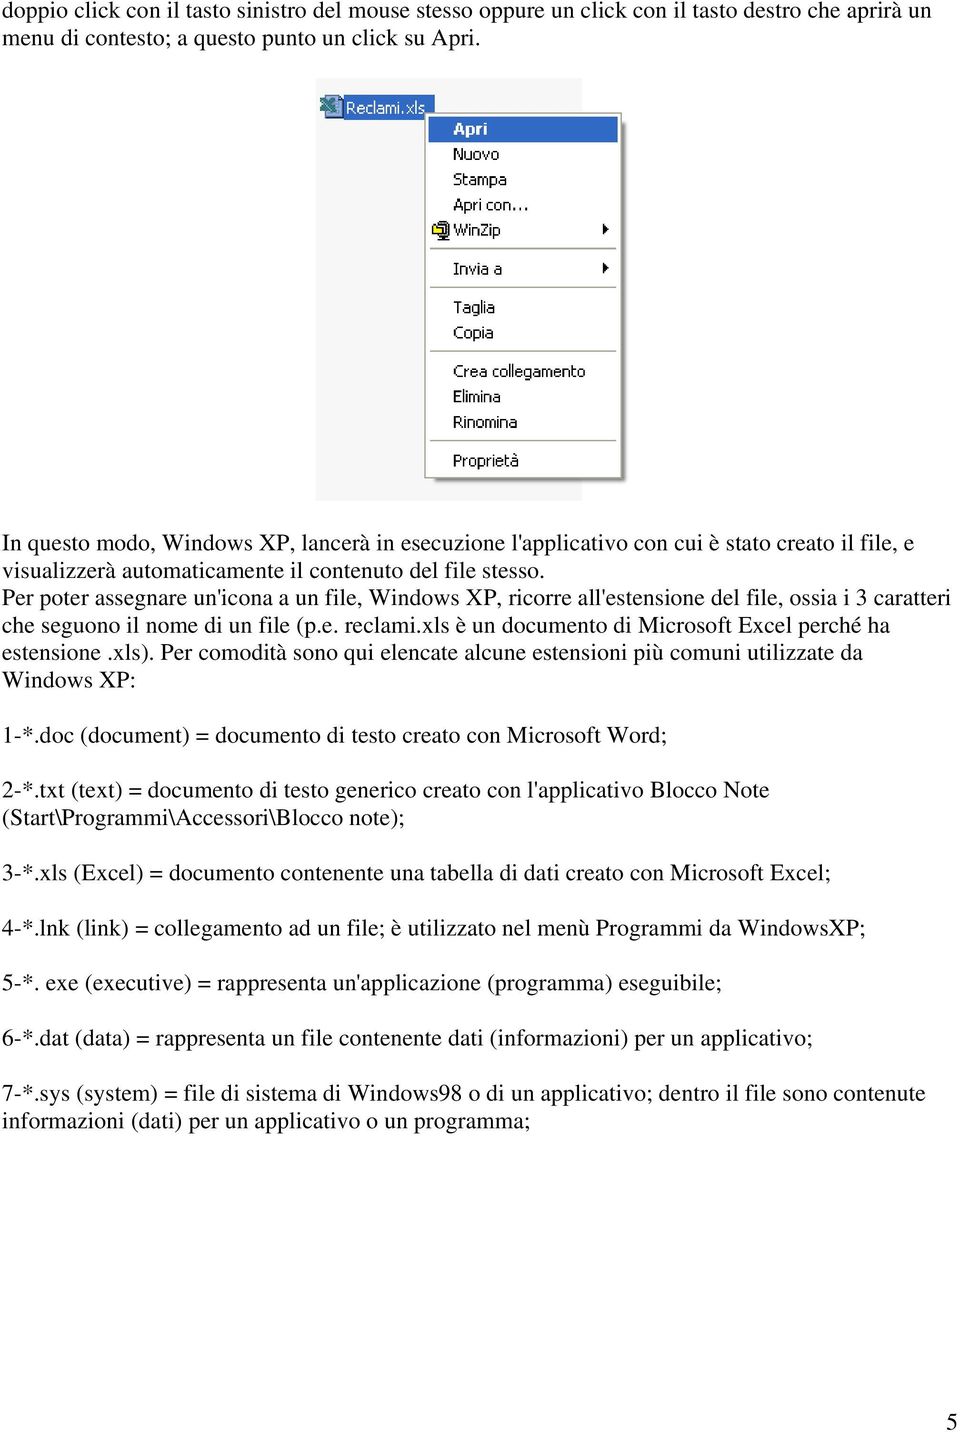 Per poter assegnare un'icona a un file, Windows XP, ricorre all'estensione del file, ossia i 3 caratteri che seguono il nome di un file (p.e. reclami.